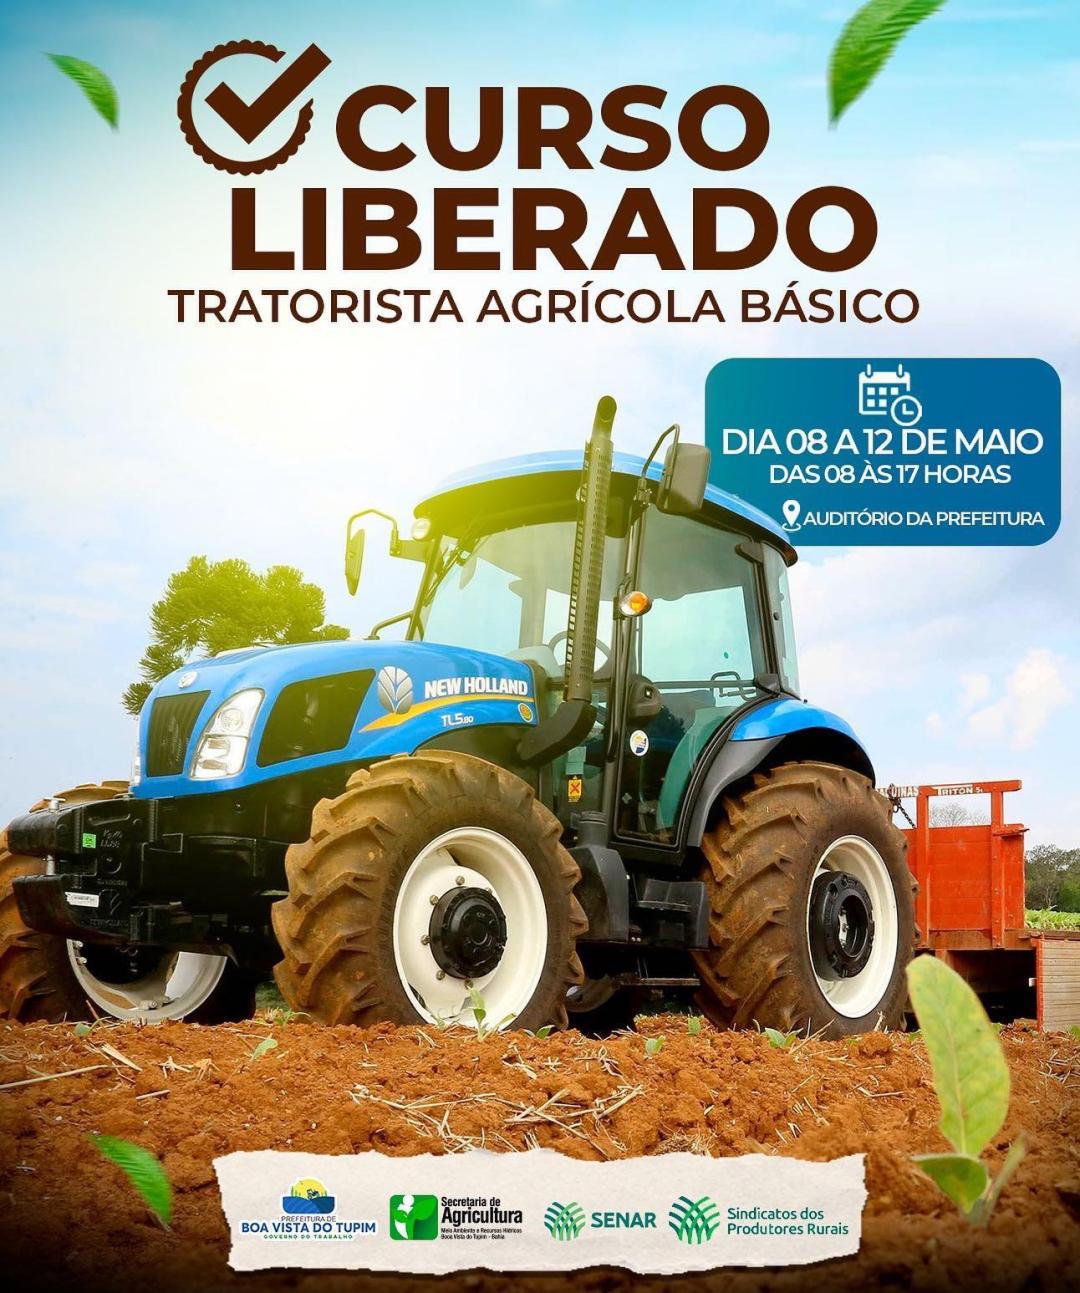 Curso de operação de tratores agrícolas com o objetivo de levar novas tecnologias aos produtores e trabalhadores rurais.